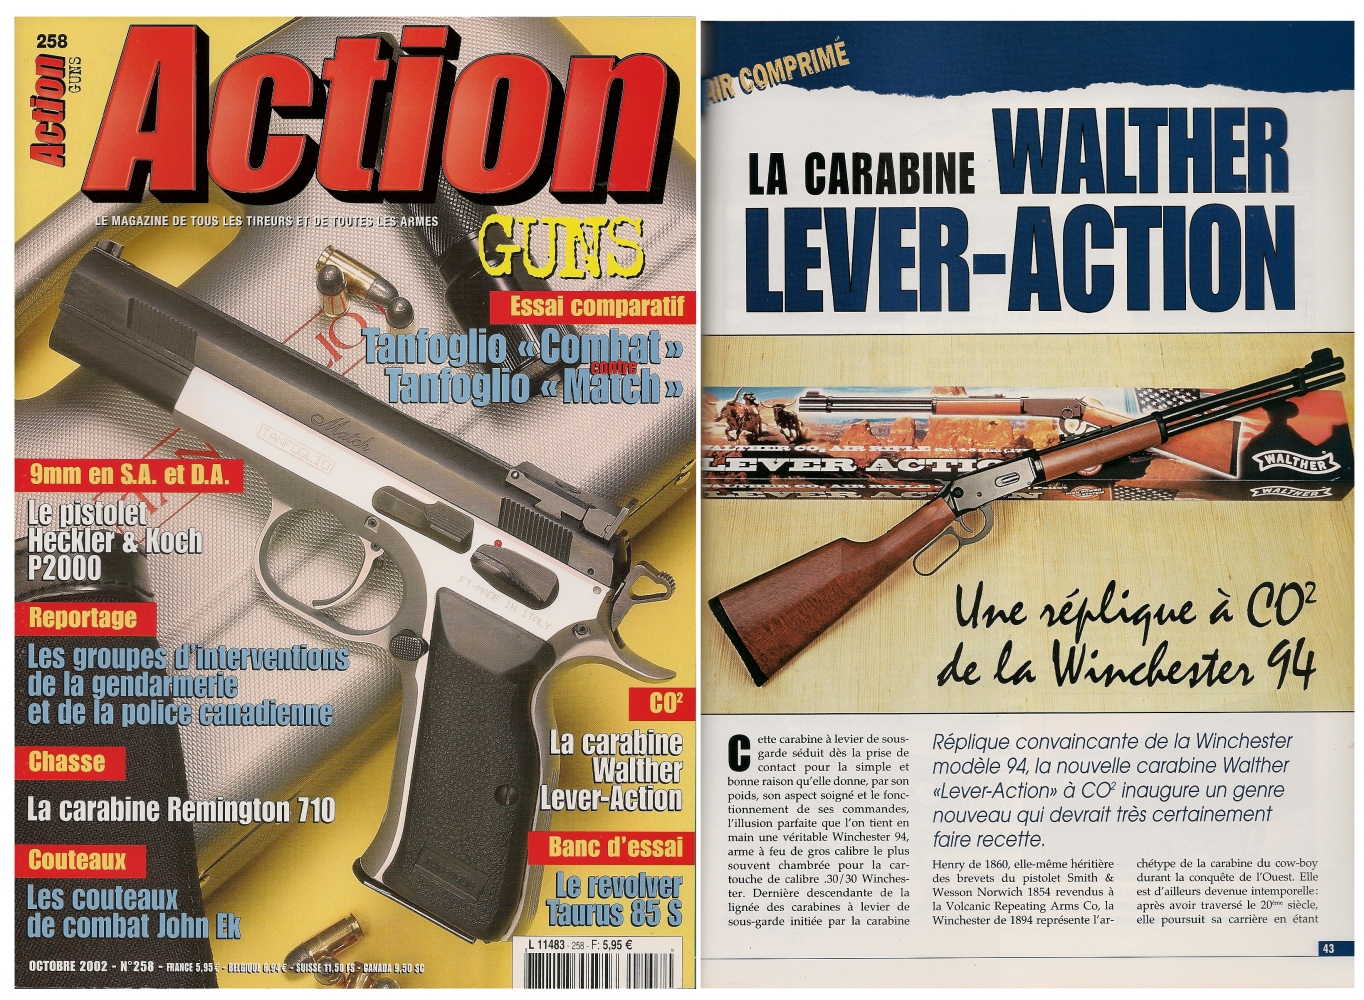 Le banc d’essai de la carabine à Co2 Walther Lever-Action a été publié sur 4 pages dans le magazine Action Guns n°258 (octobre 2002).